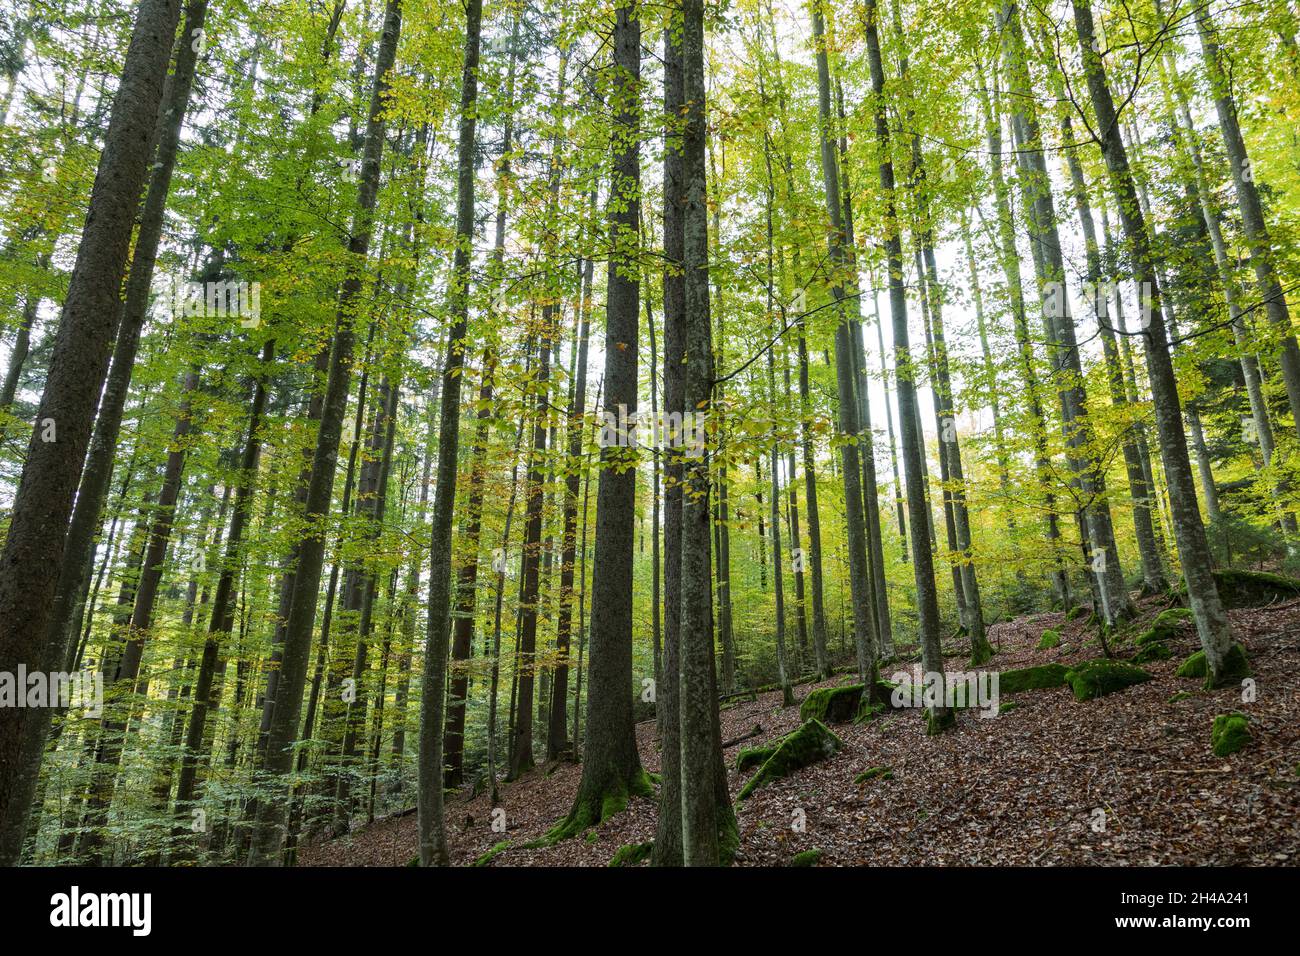 Buchenmischwald, foresta mista di faggio Foto Stock